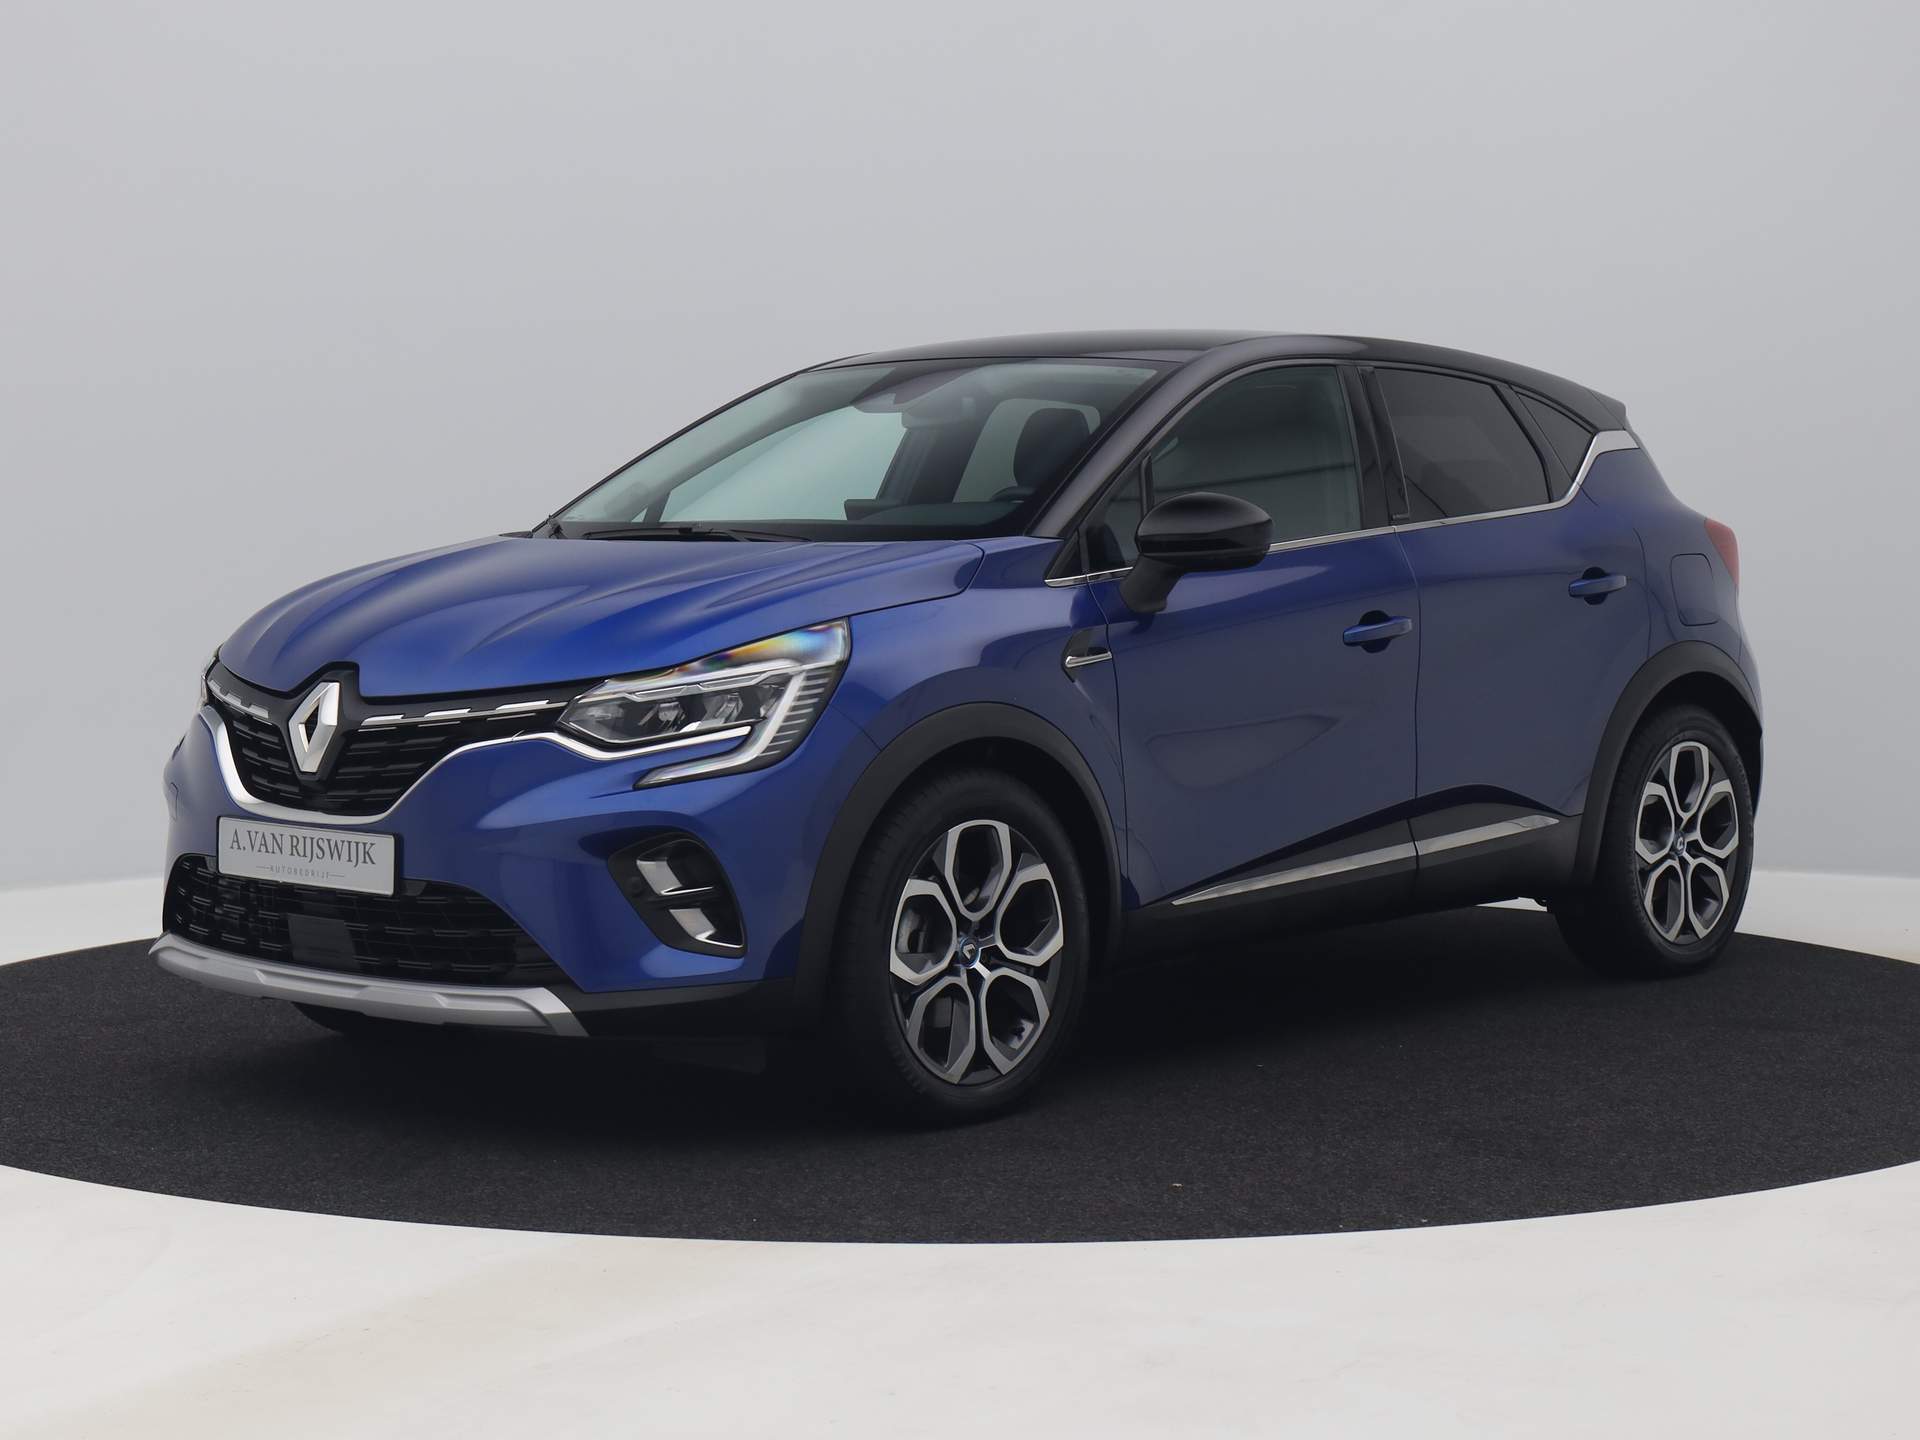 Tweedehands Renault occasion kopen